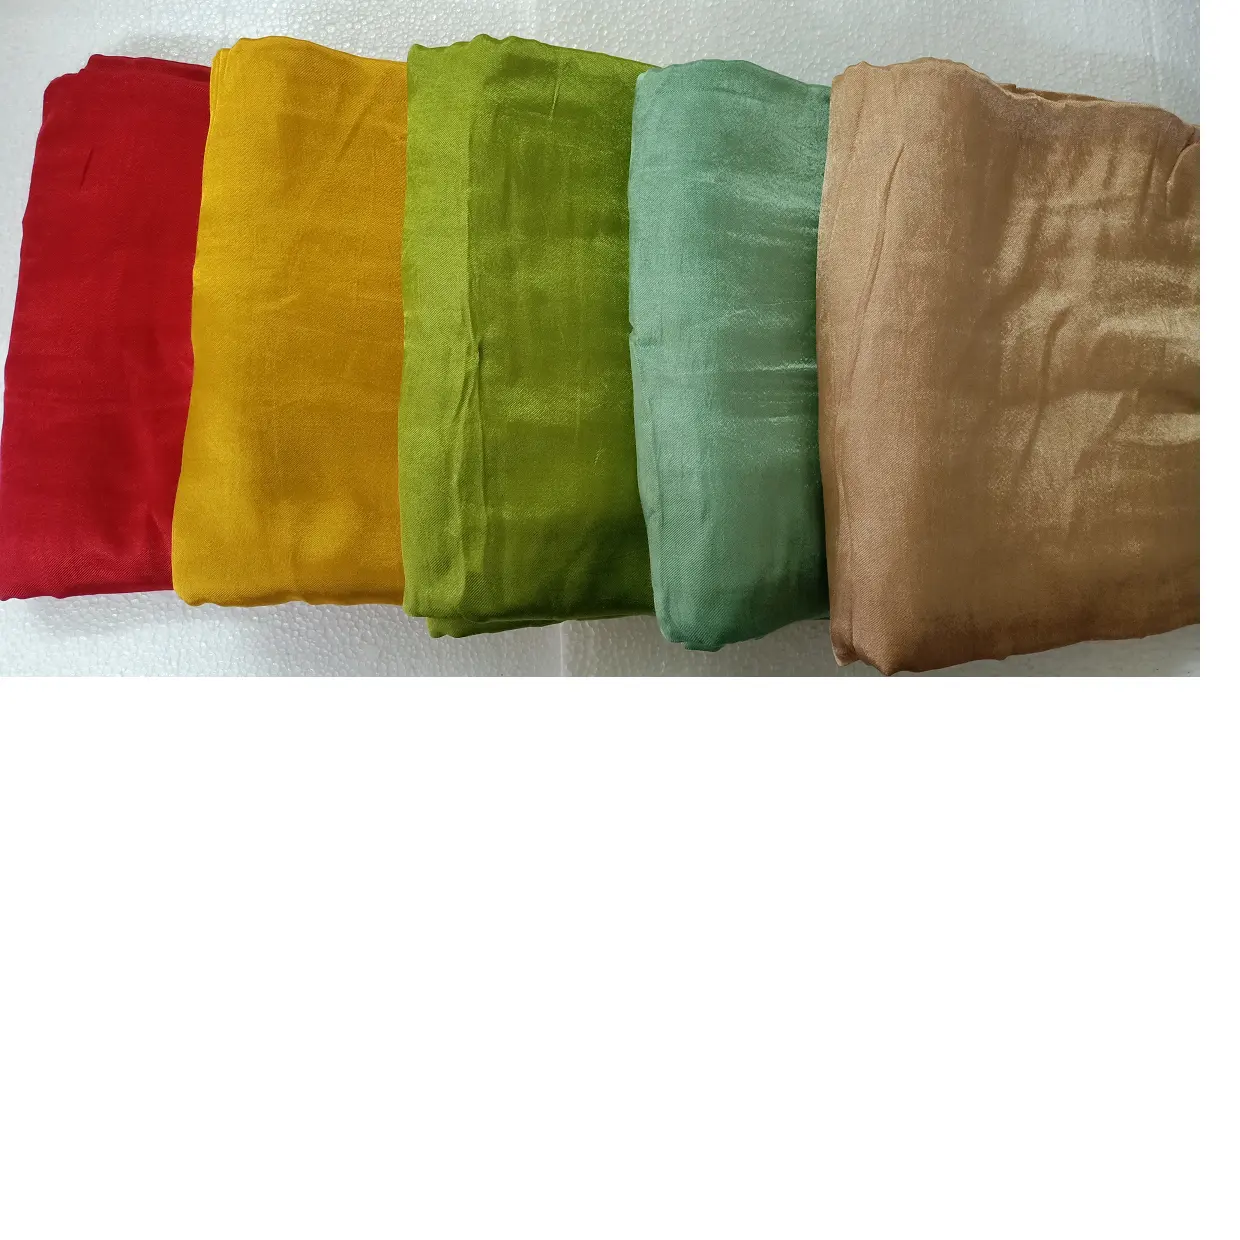 कस्टम रंगे mashru रेशम कपड़े कस्टम के लिए मिश्रित रंग में रंगे कपड़ों के लिए आदर्श डिजाइनरों परिधान विनिर्माण